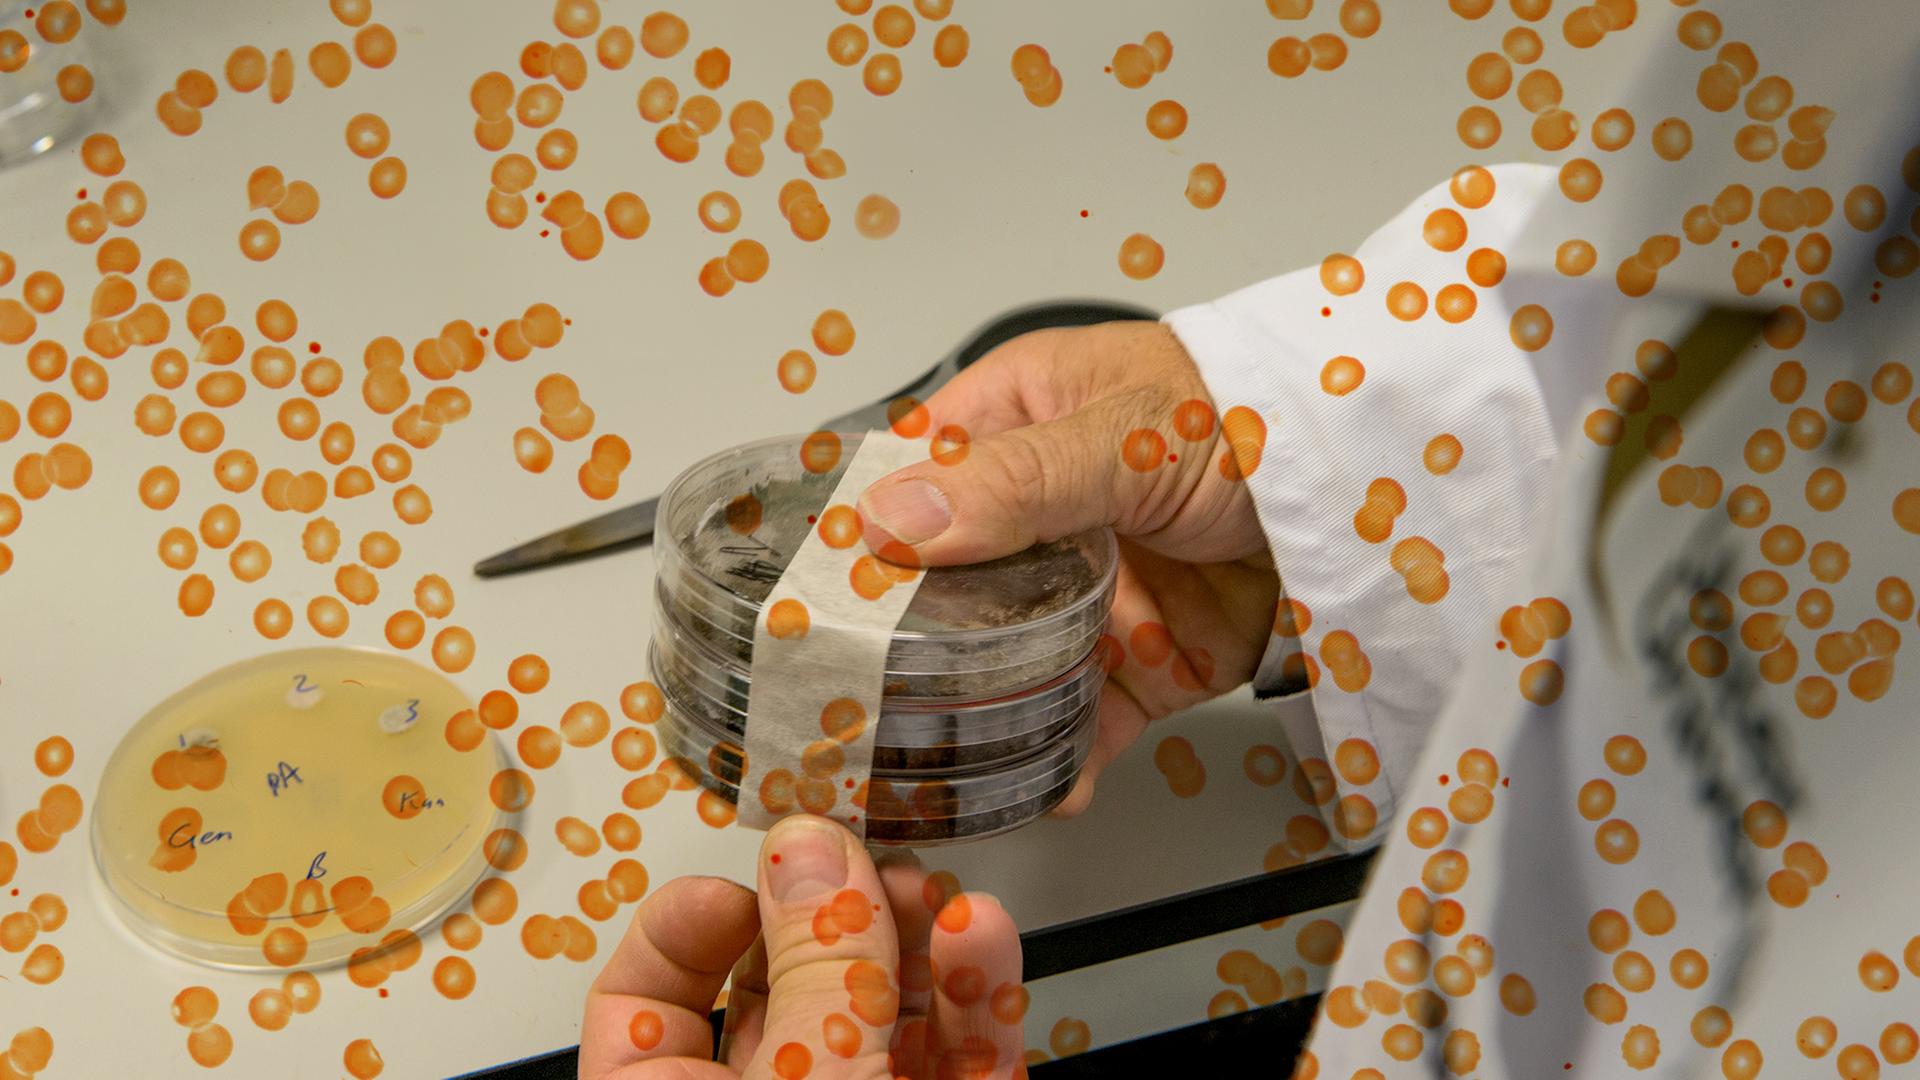 Eine Person hält mehrer übereinander gestapelte Petrischalen in der Hand. Das Foto wird von einer Grafik aus orangen Punkten überlagert.